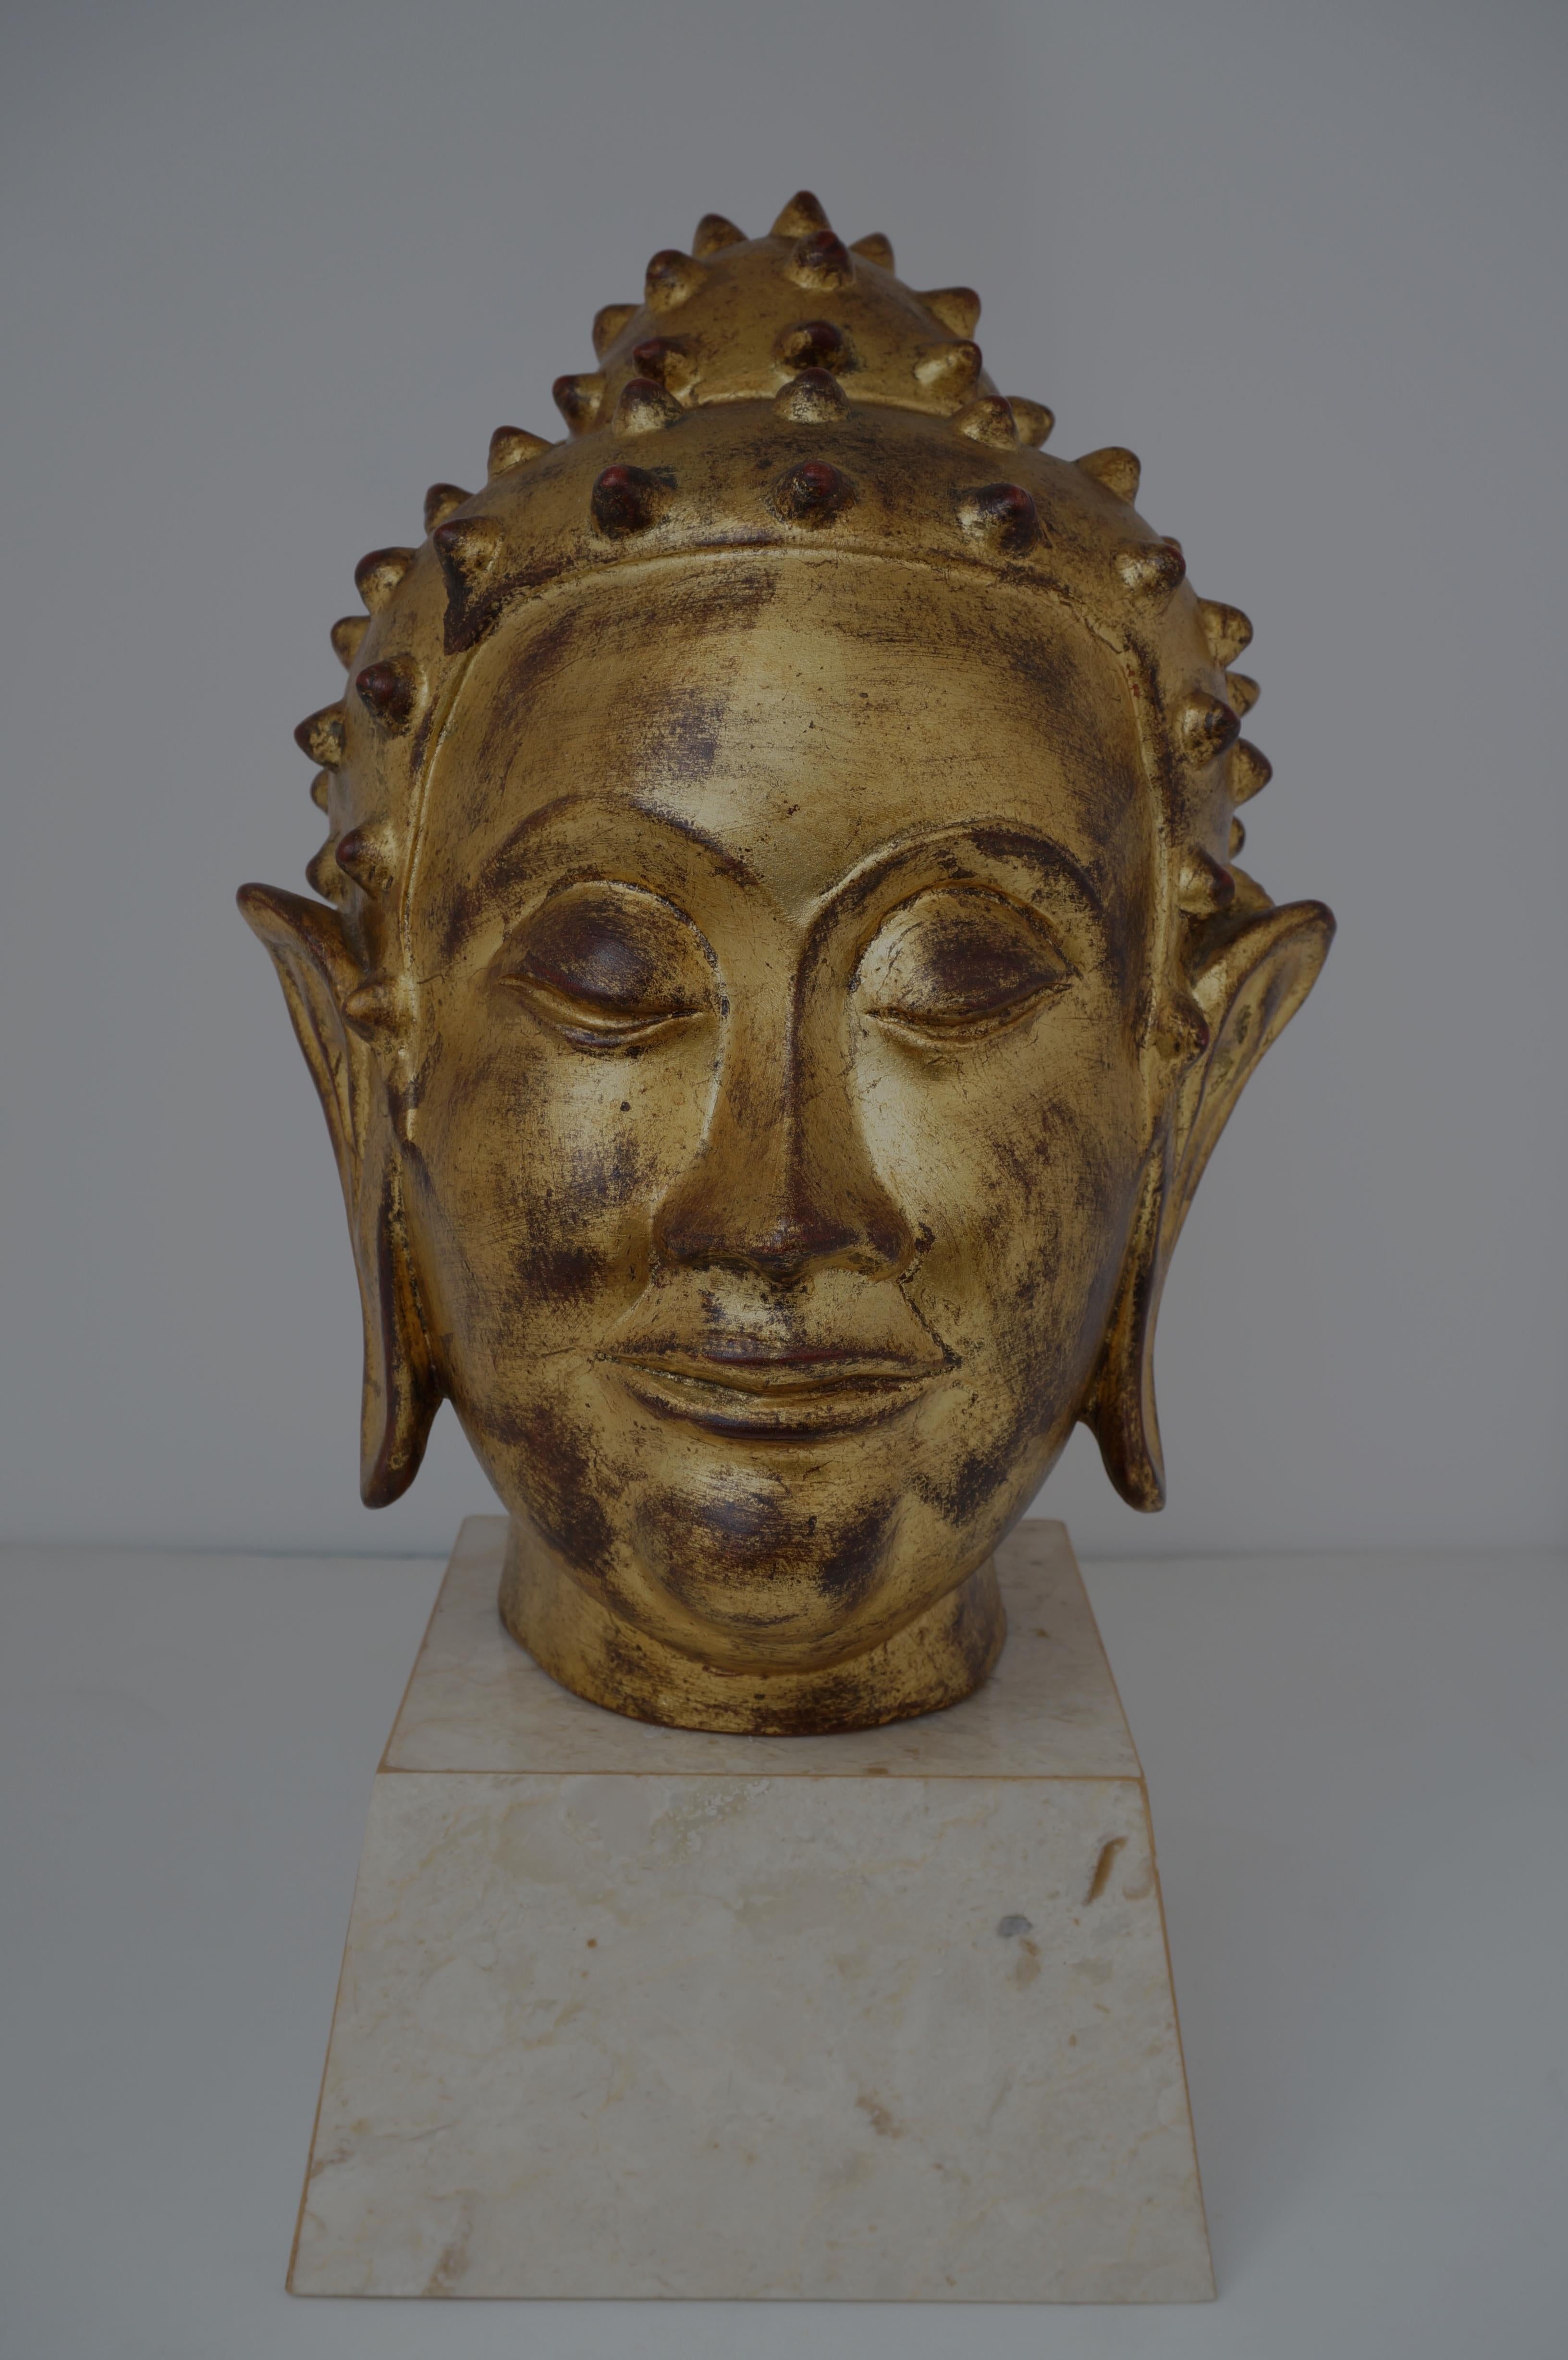 Dieser italienische Buddha-Kopf aus Terrakotta mit Blattgold stammt aus den 1960er- bis 1970er-Jahren und bringt mit seinem heiteren Gesicht Ruhe in Ihr Zuhause und Ihr Leben.

Hinweis: Der Sockel misst 4,25